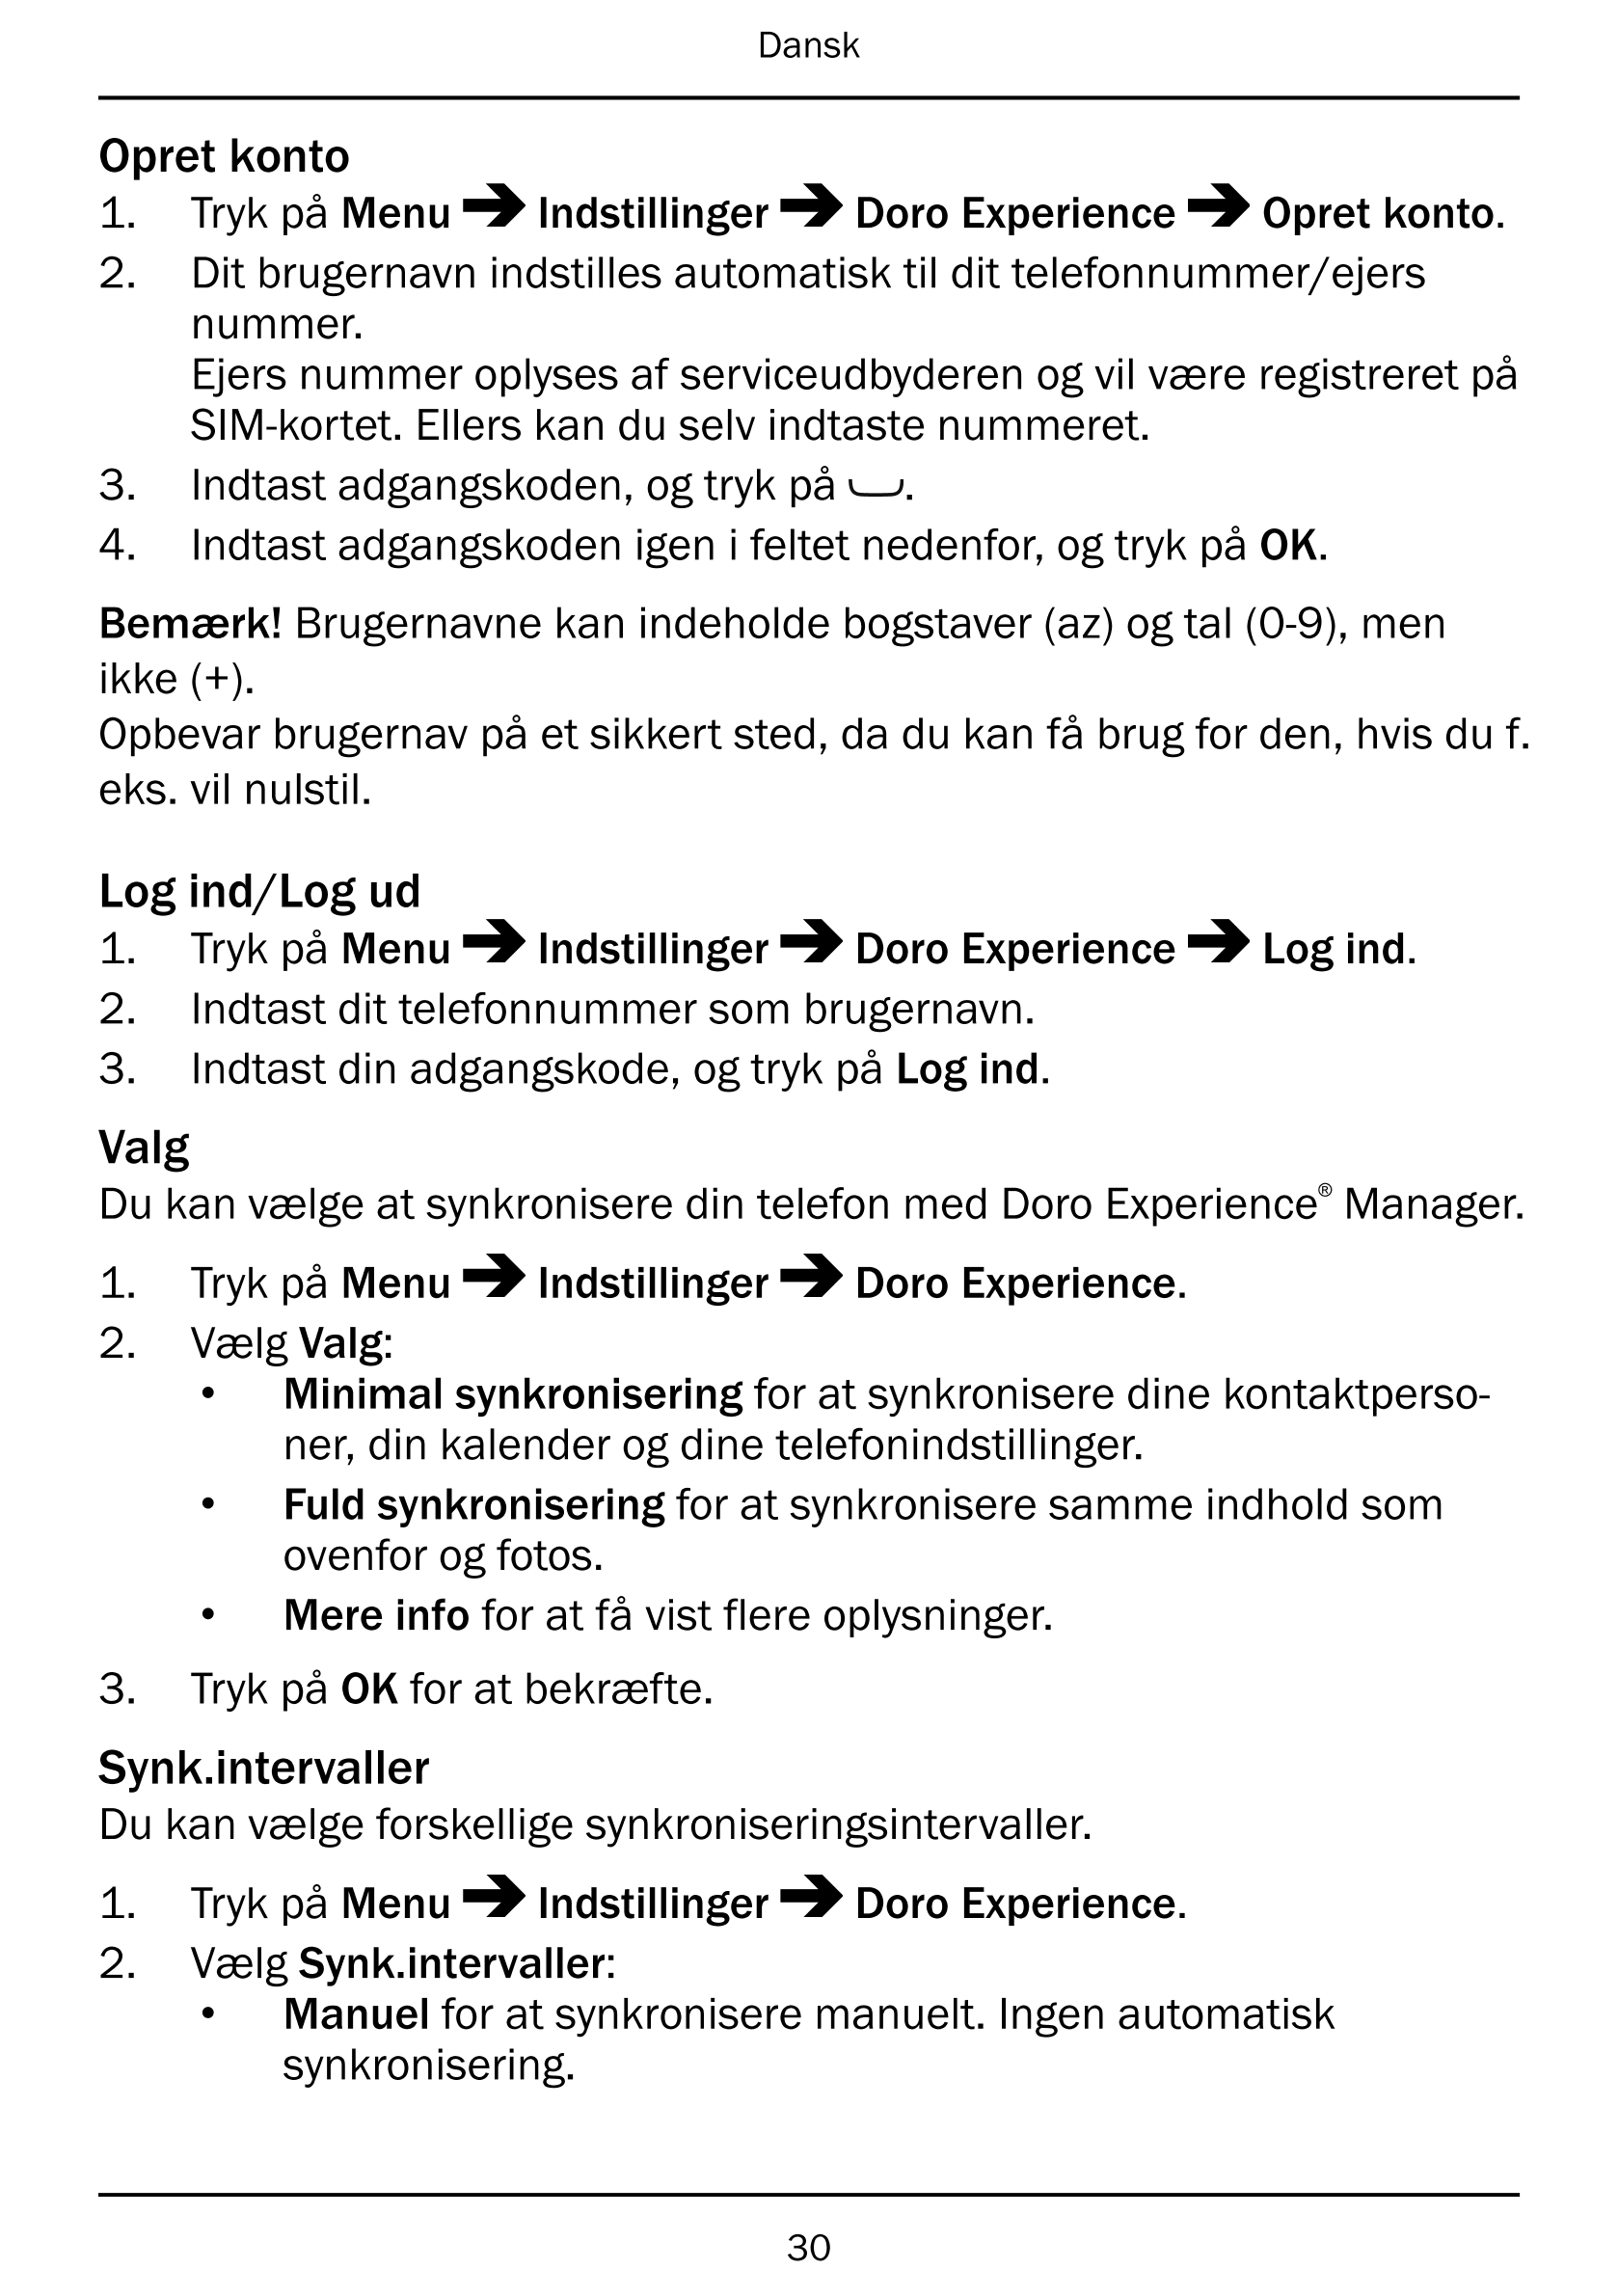 Dansk
Opret konto
1.     Tryk på Menu Indstillinger Doro Experience Opret konto.
2.     Dit brugernavn indstilles automatisk til